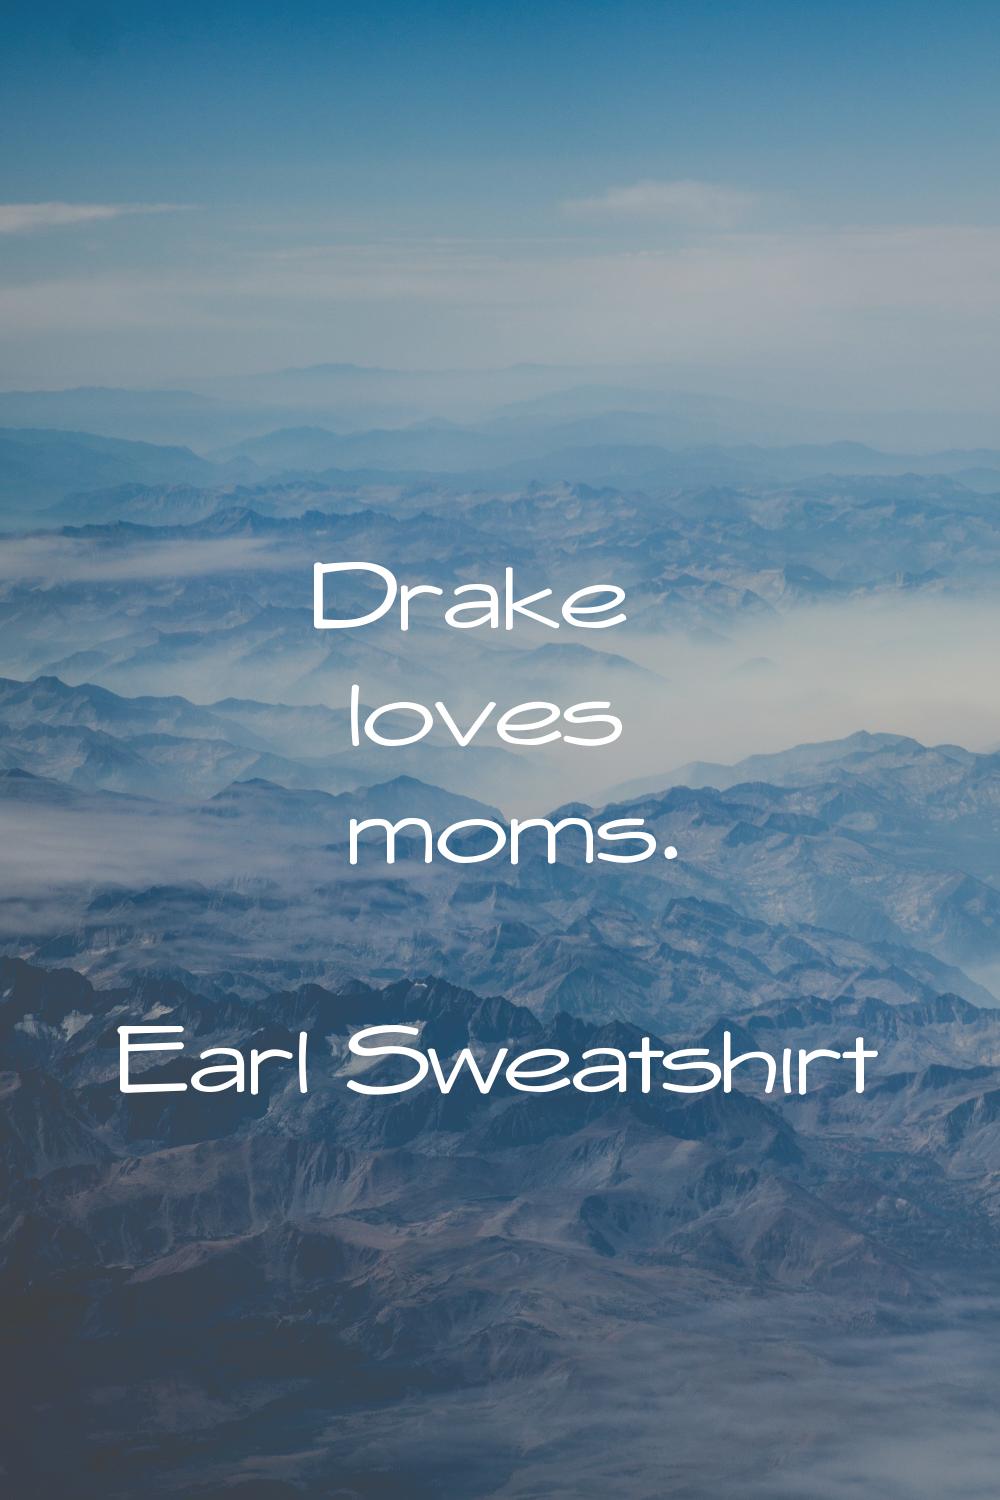 Drake loves moms.